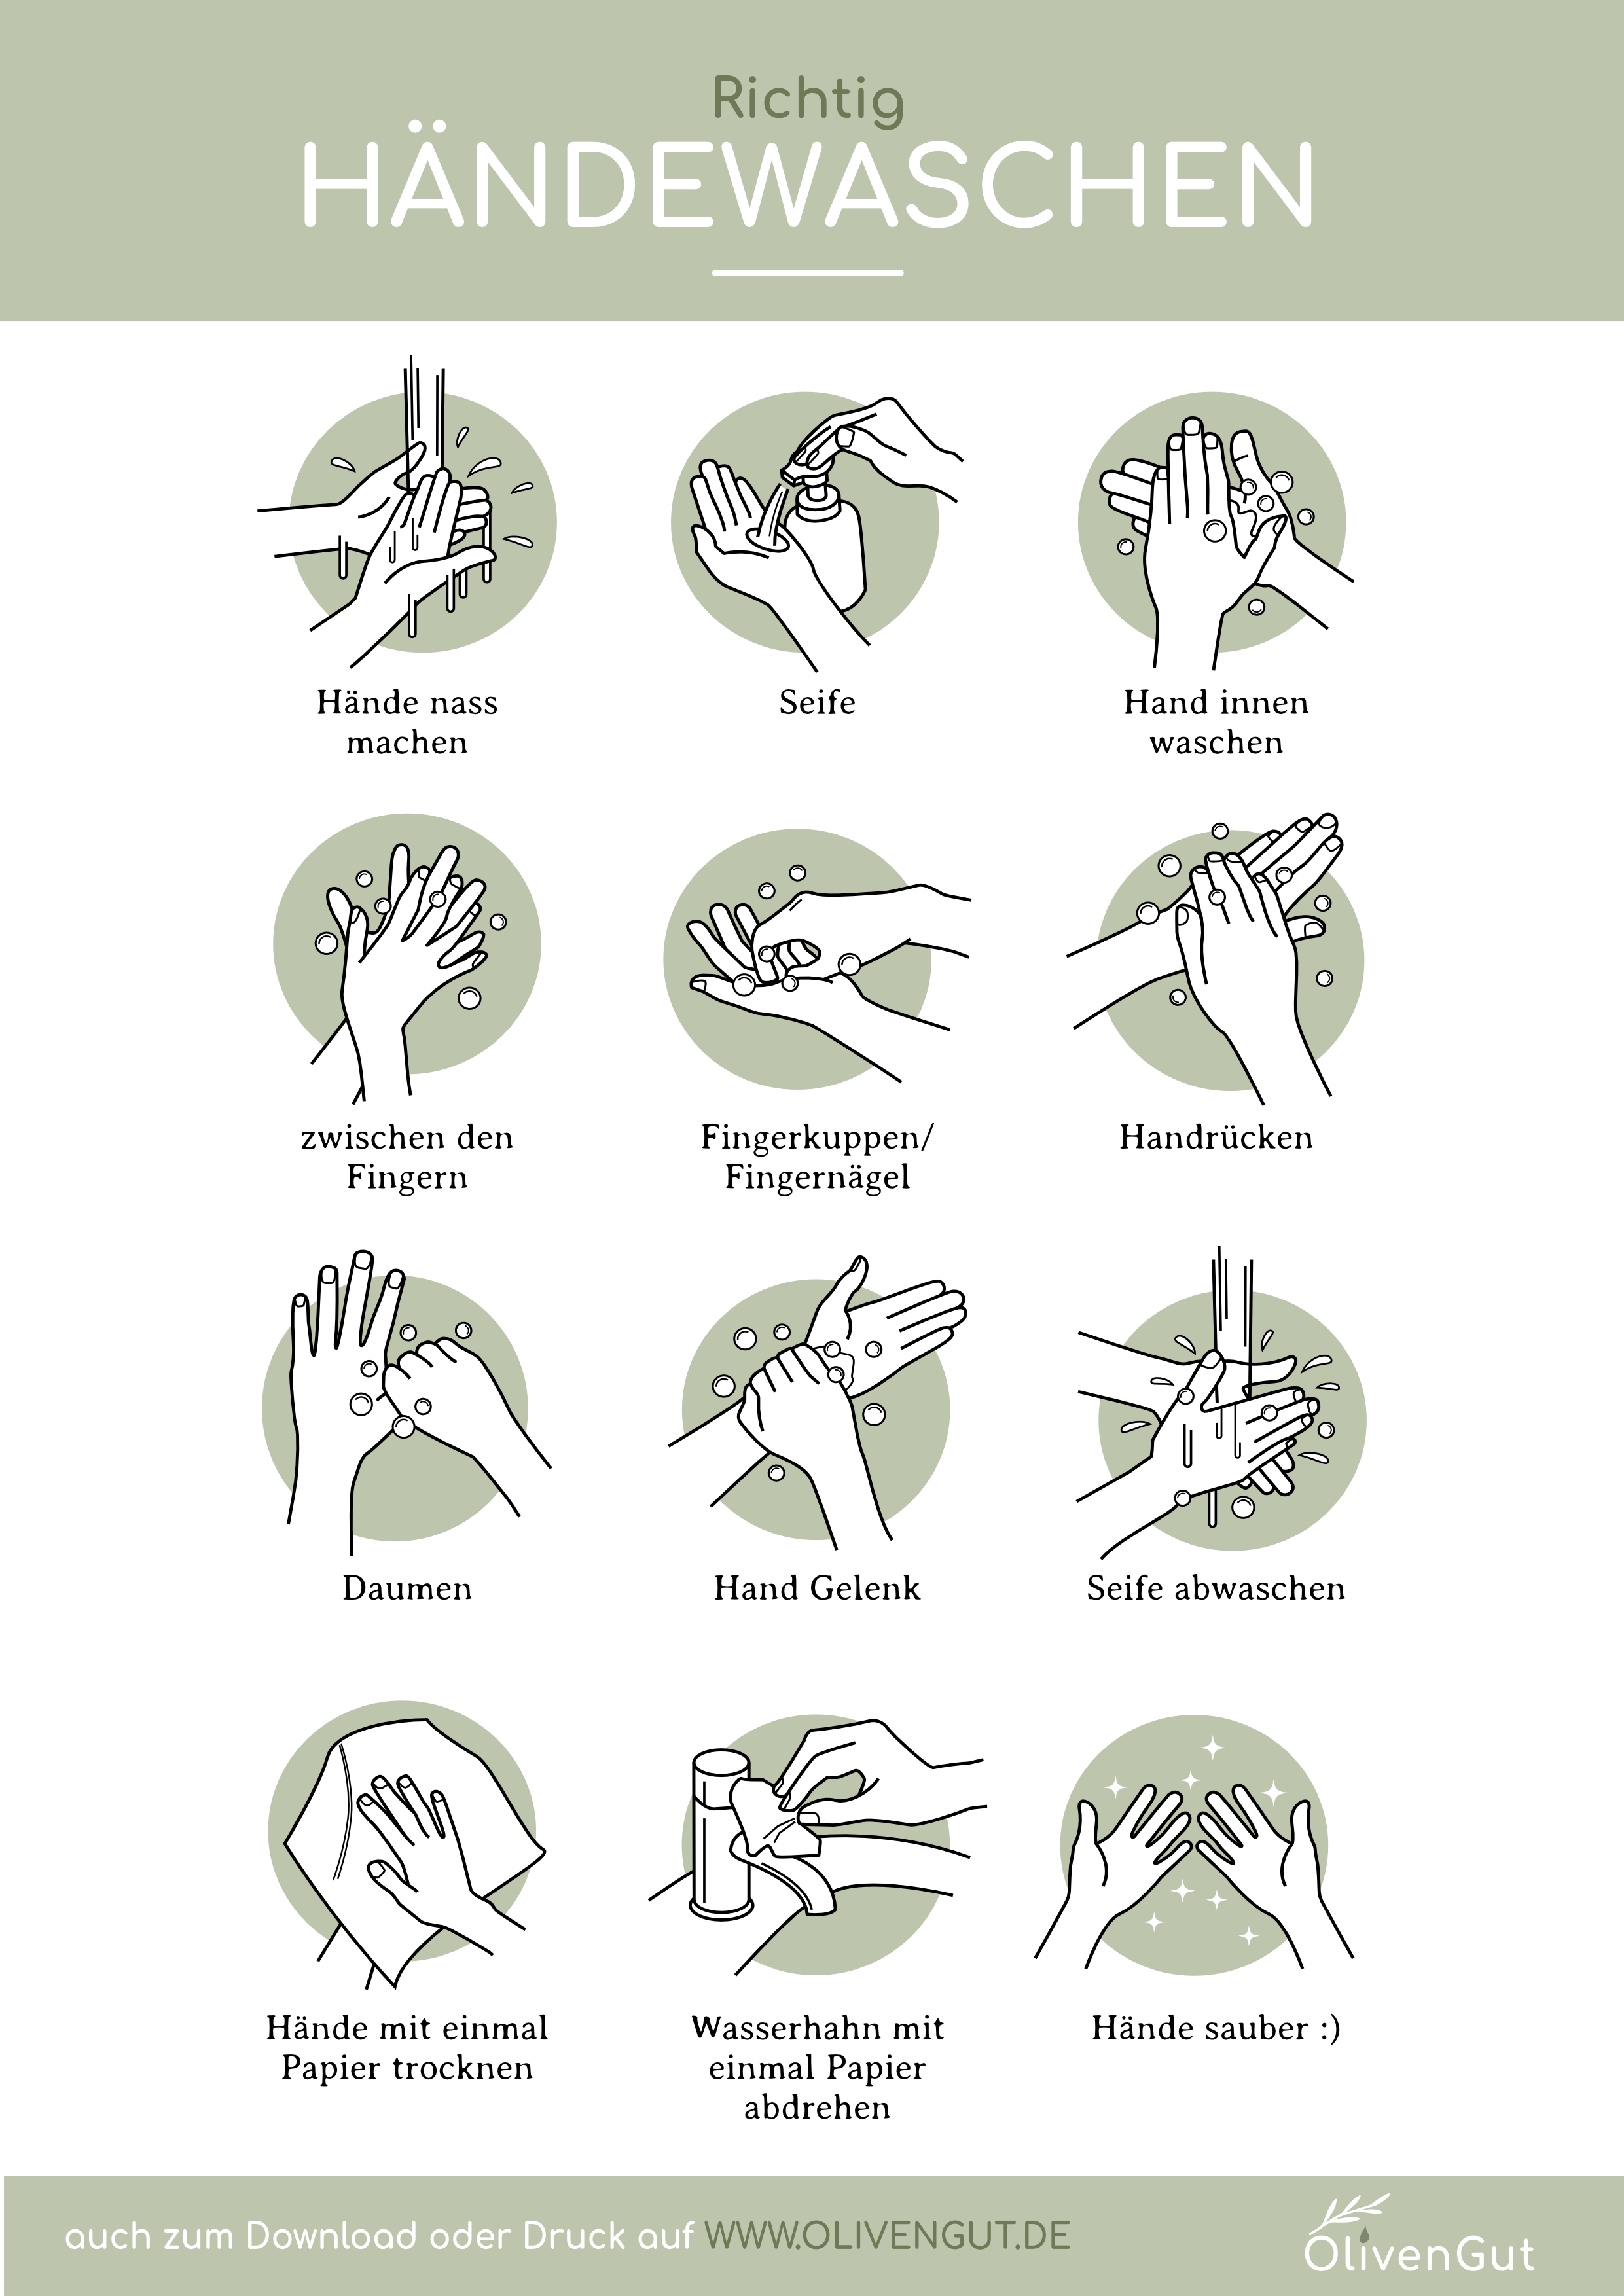 Richtig-Händewaschen_Infografik